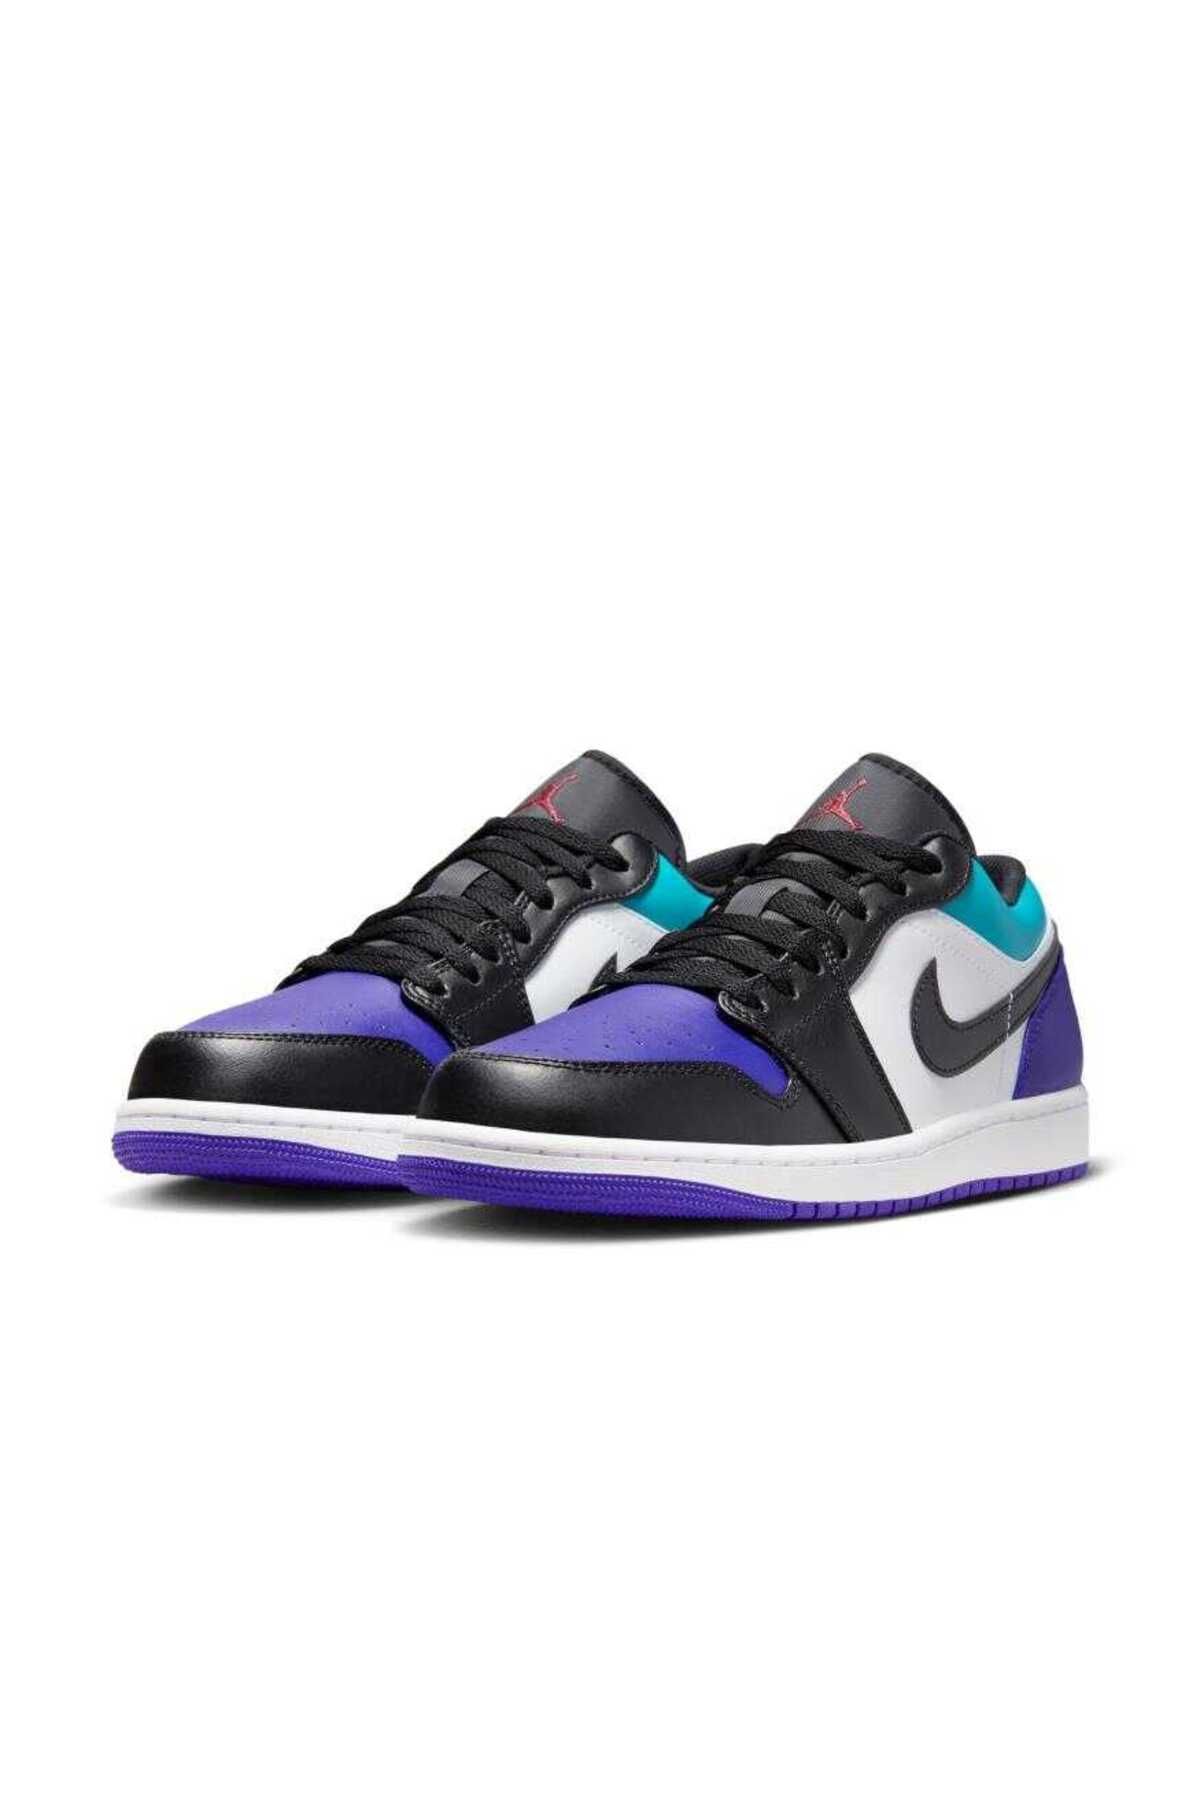 Nike Air Jordan 1 Low "Black/Purple/Aqua